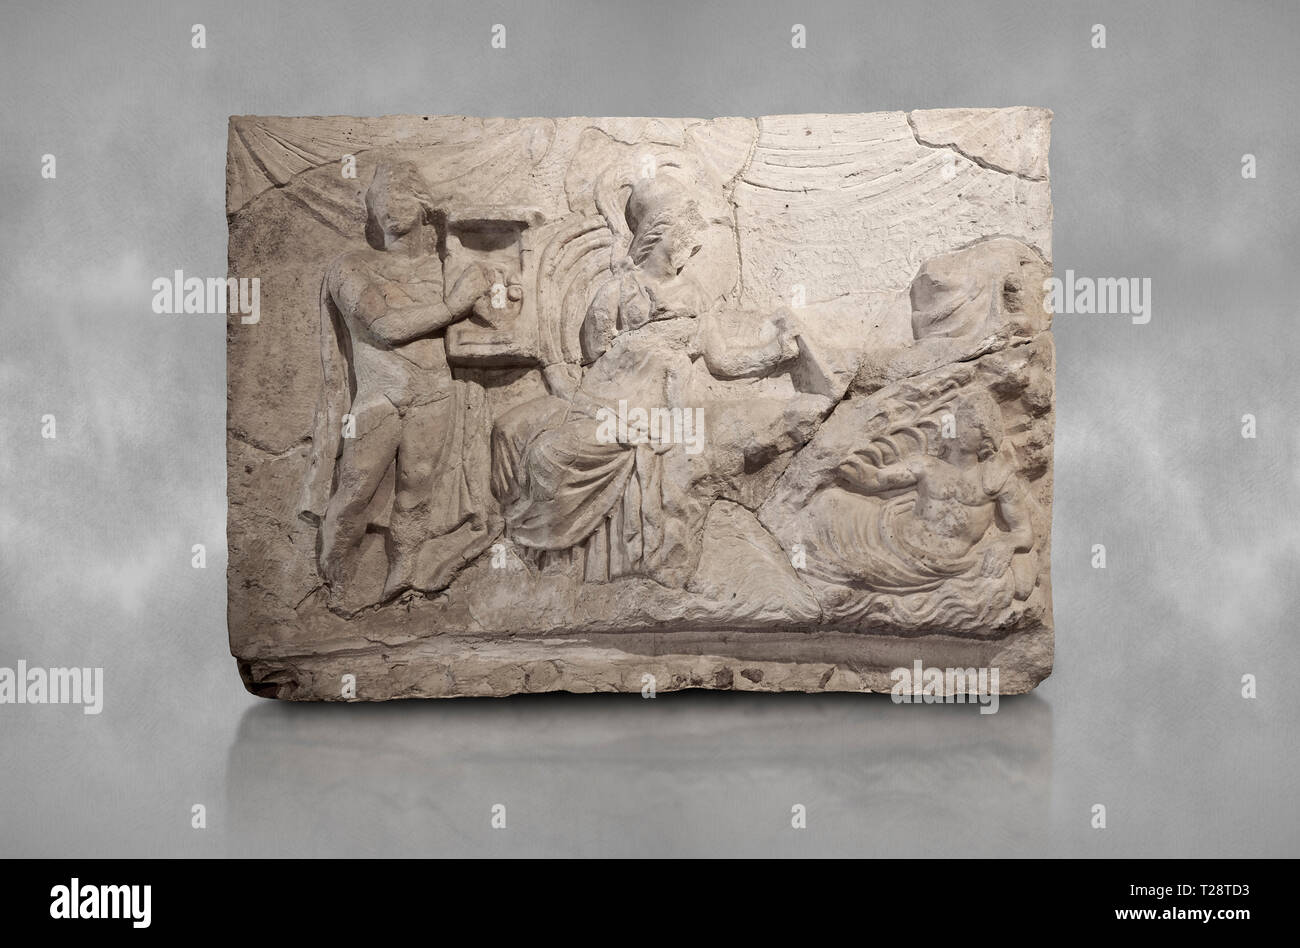 Sculpture relief romain du mythe de Marsyas. 2ème ANNONCE de siècle, romaine Hierapolis Theatre.. Musée Archéologique de Hierapolis, Turquie Banque D'Images